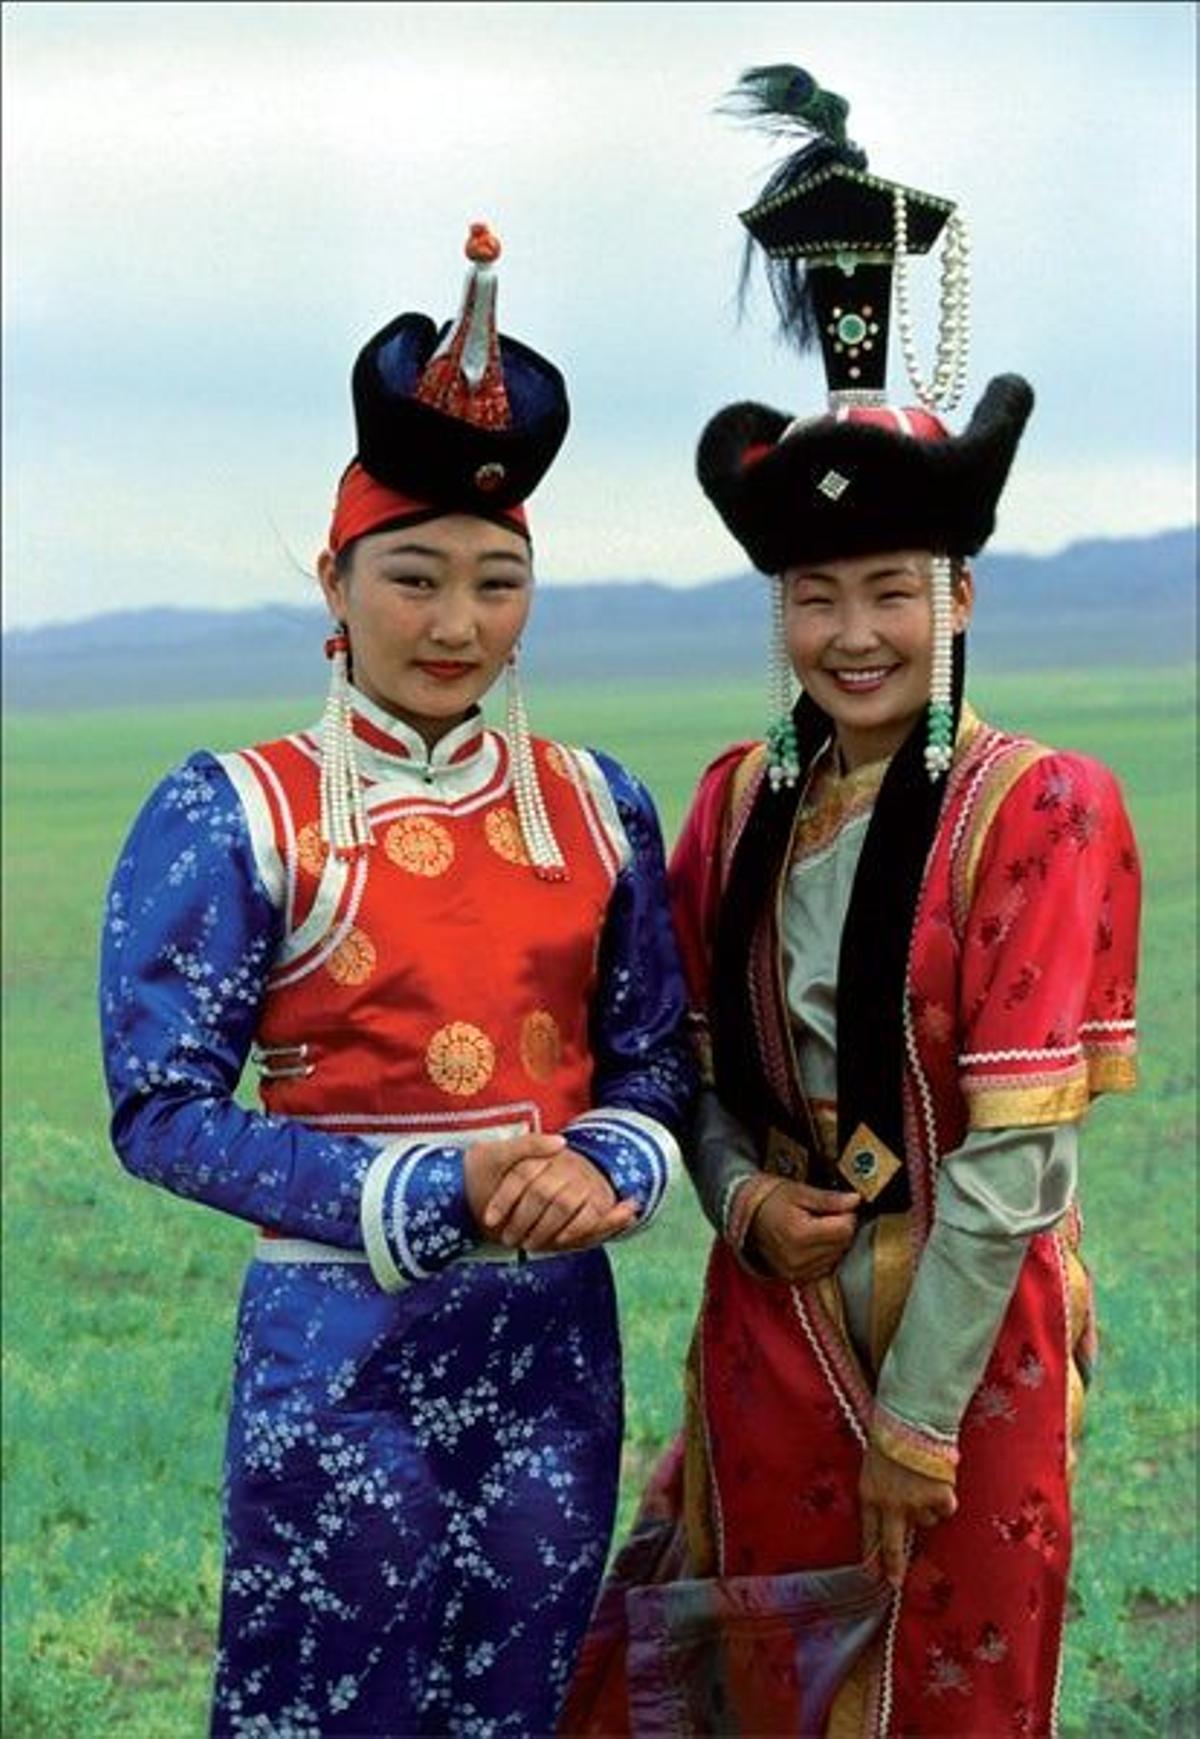 Mongolia, fiesta en el reino de las estepas